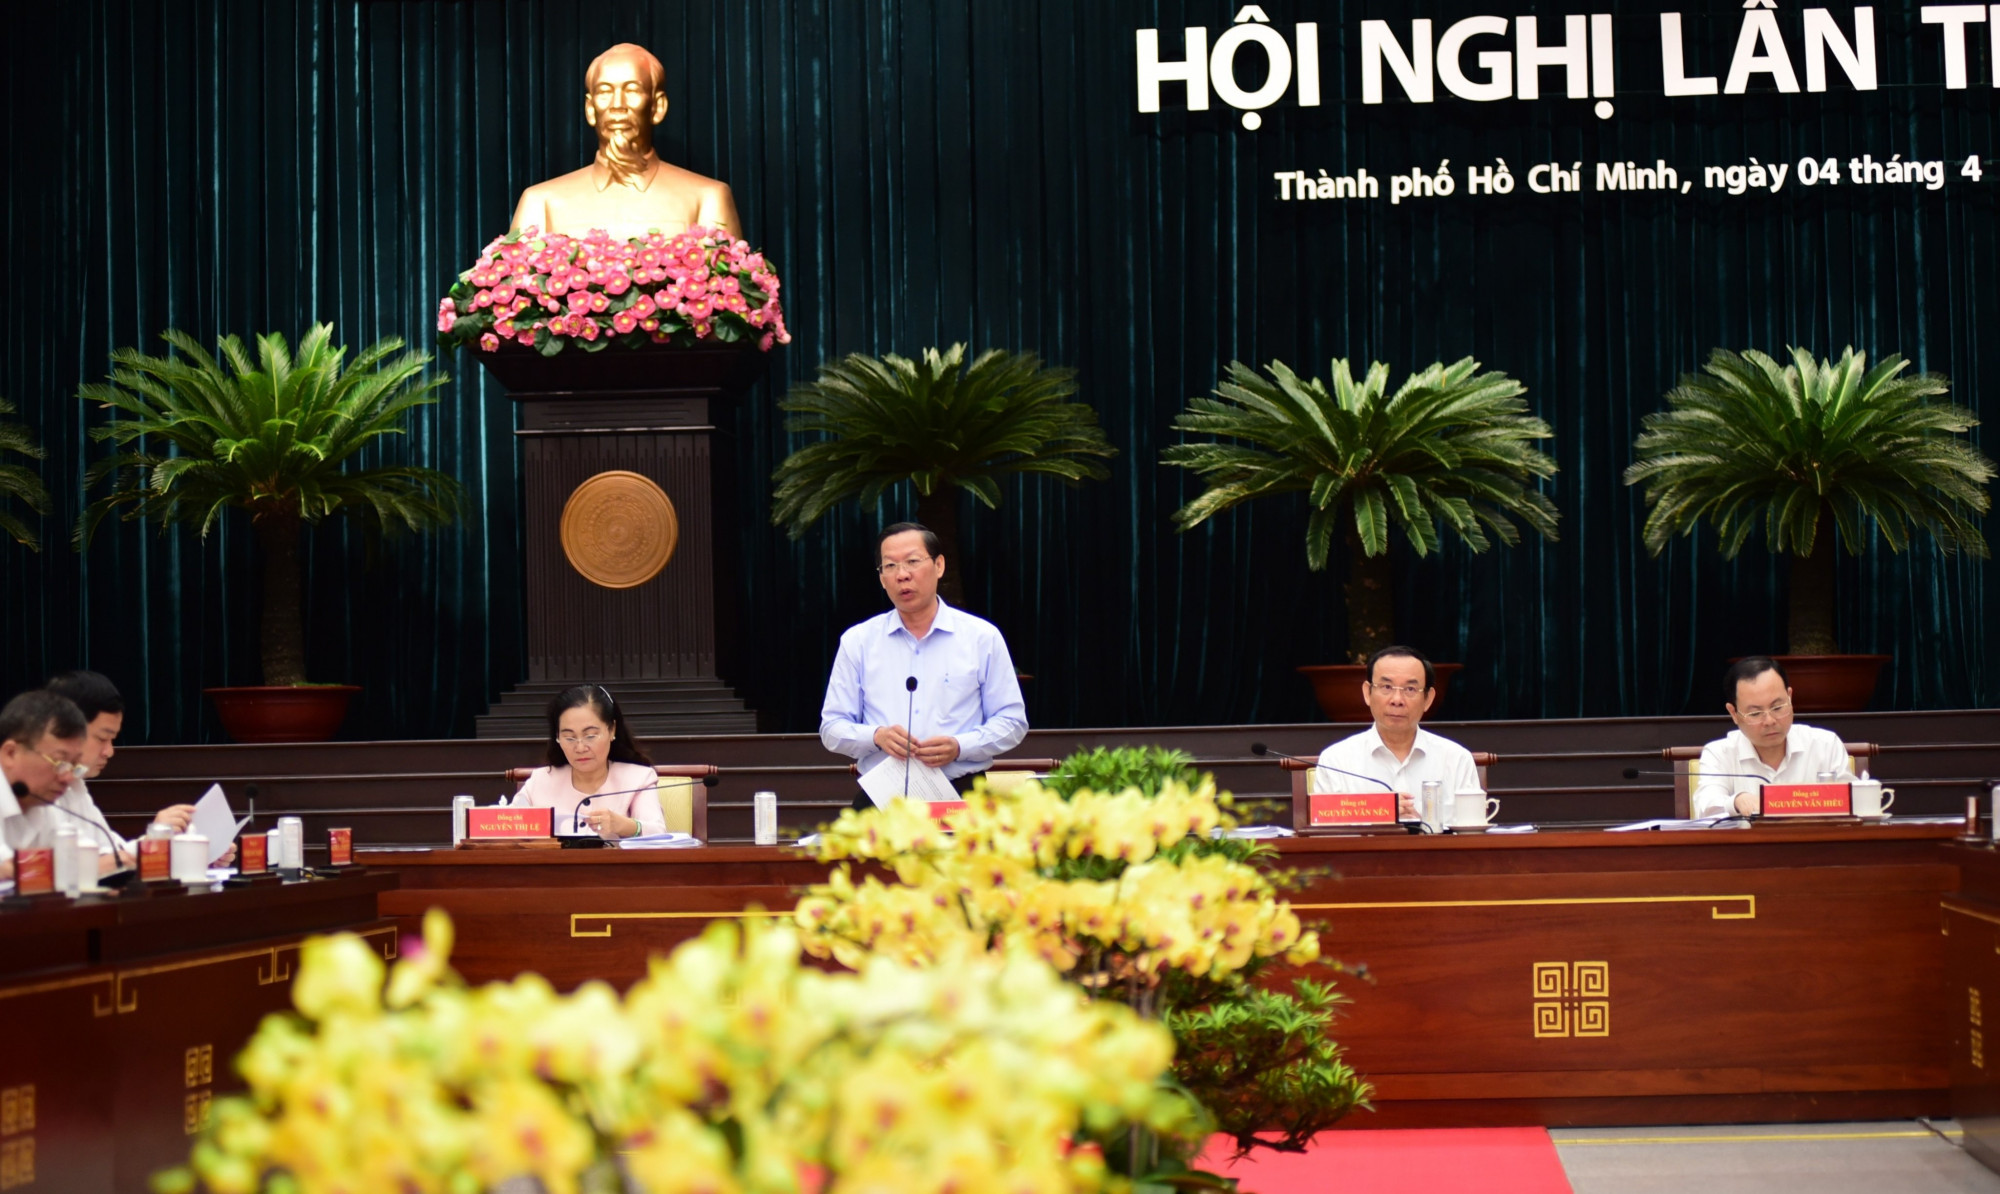 Chủ tịch UBND TPHCM Phan Văn Mãi thông tin một số giải pháp tới đây của UBND TPHCM nhằm vực dậy kinh tế